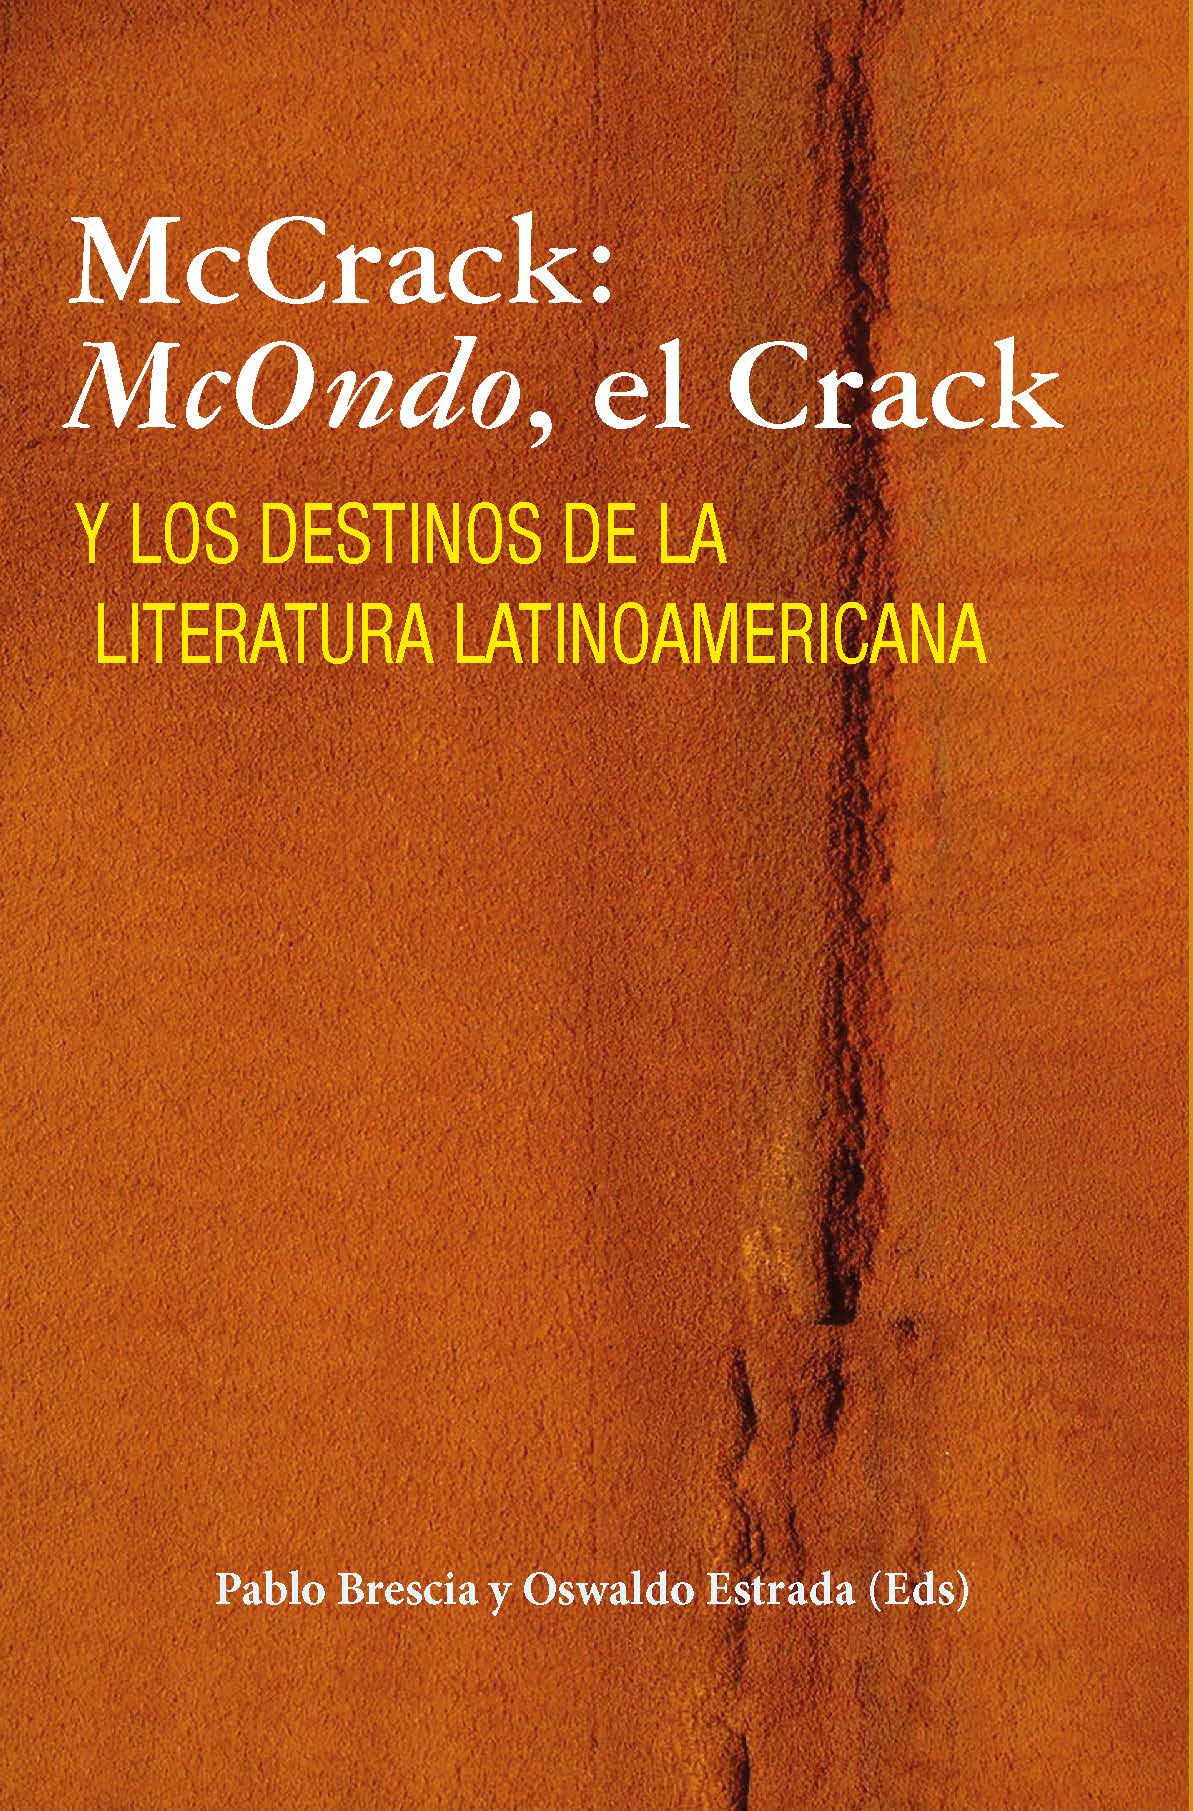 McCrack: McOndo, el Crack y los destinos de la Literatura Latinoamericana